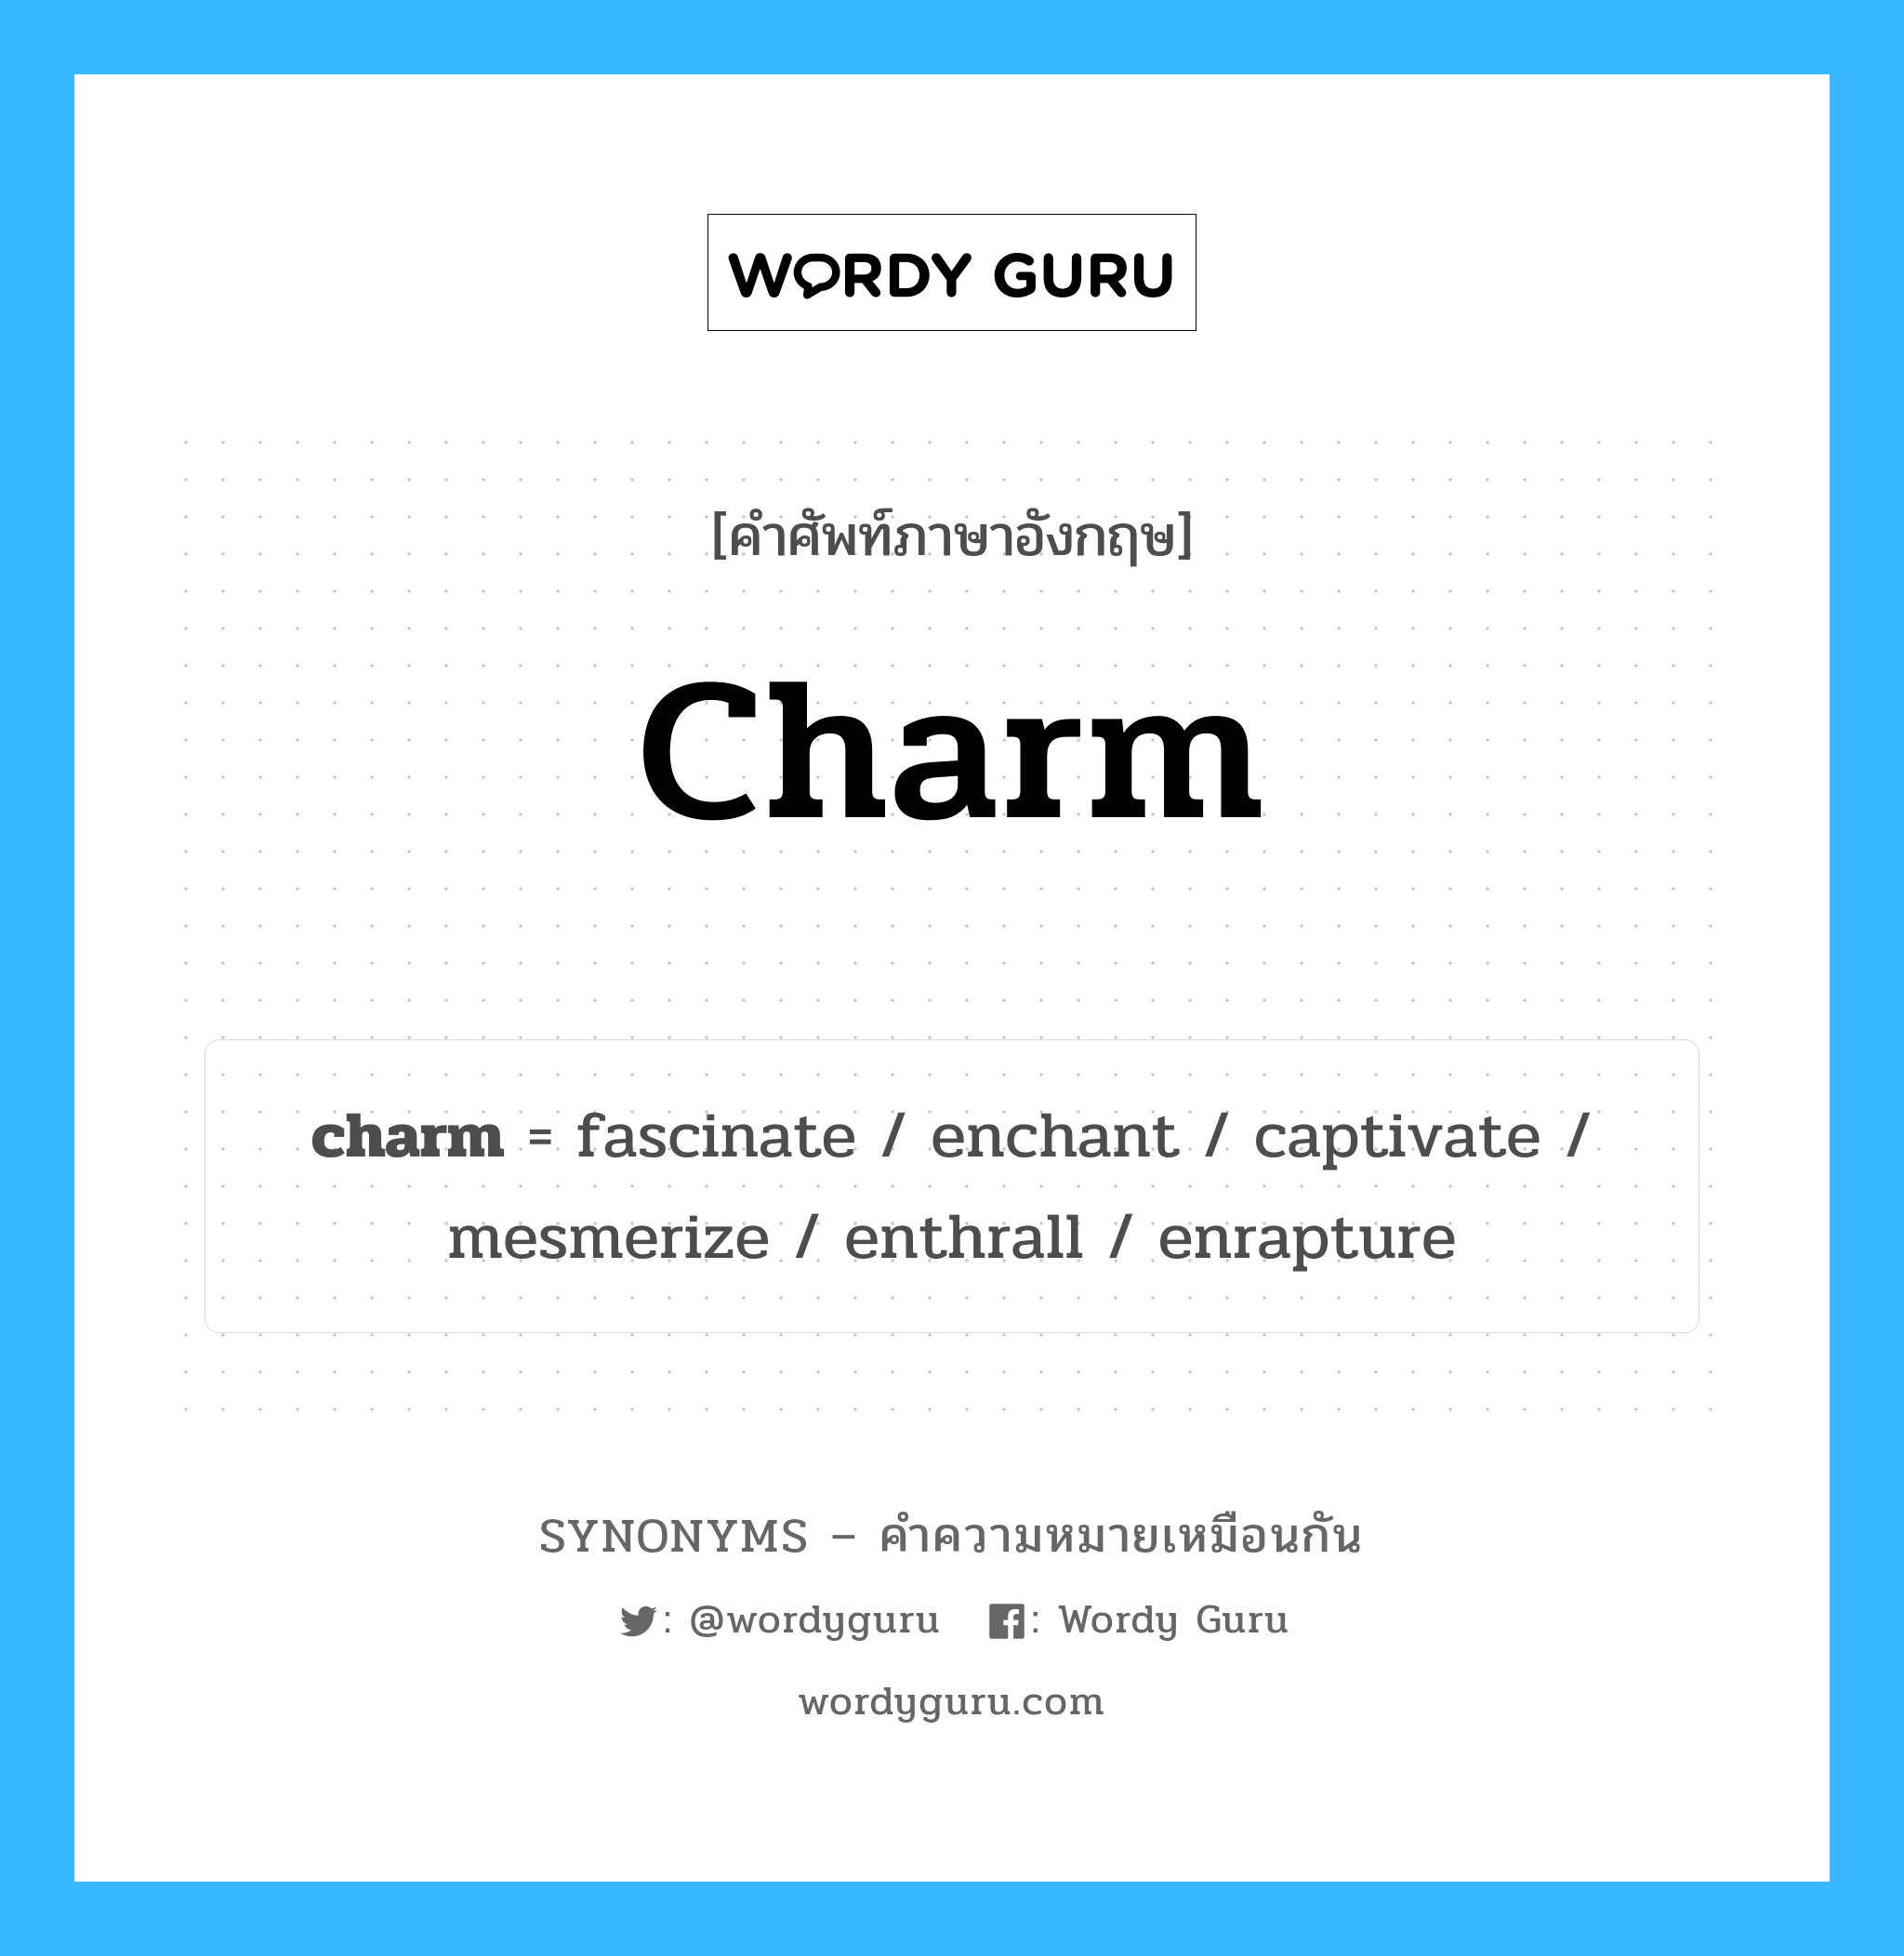 mesmerize เป็นหนึ่งใน charm และมีคำอื่น ๆ อีกดังนี้, คำศัพท์ภาษาอังกฤษ mesmerize ความหมายคล้ายกันกับ charm แปลว่า สะกดจิต หมวด charm